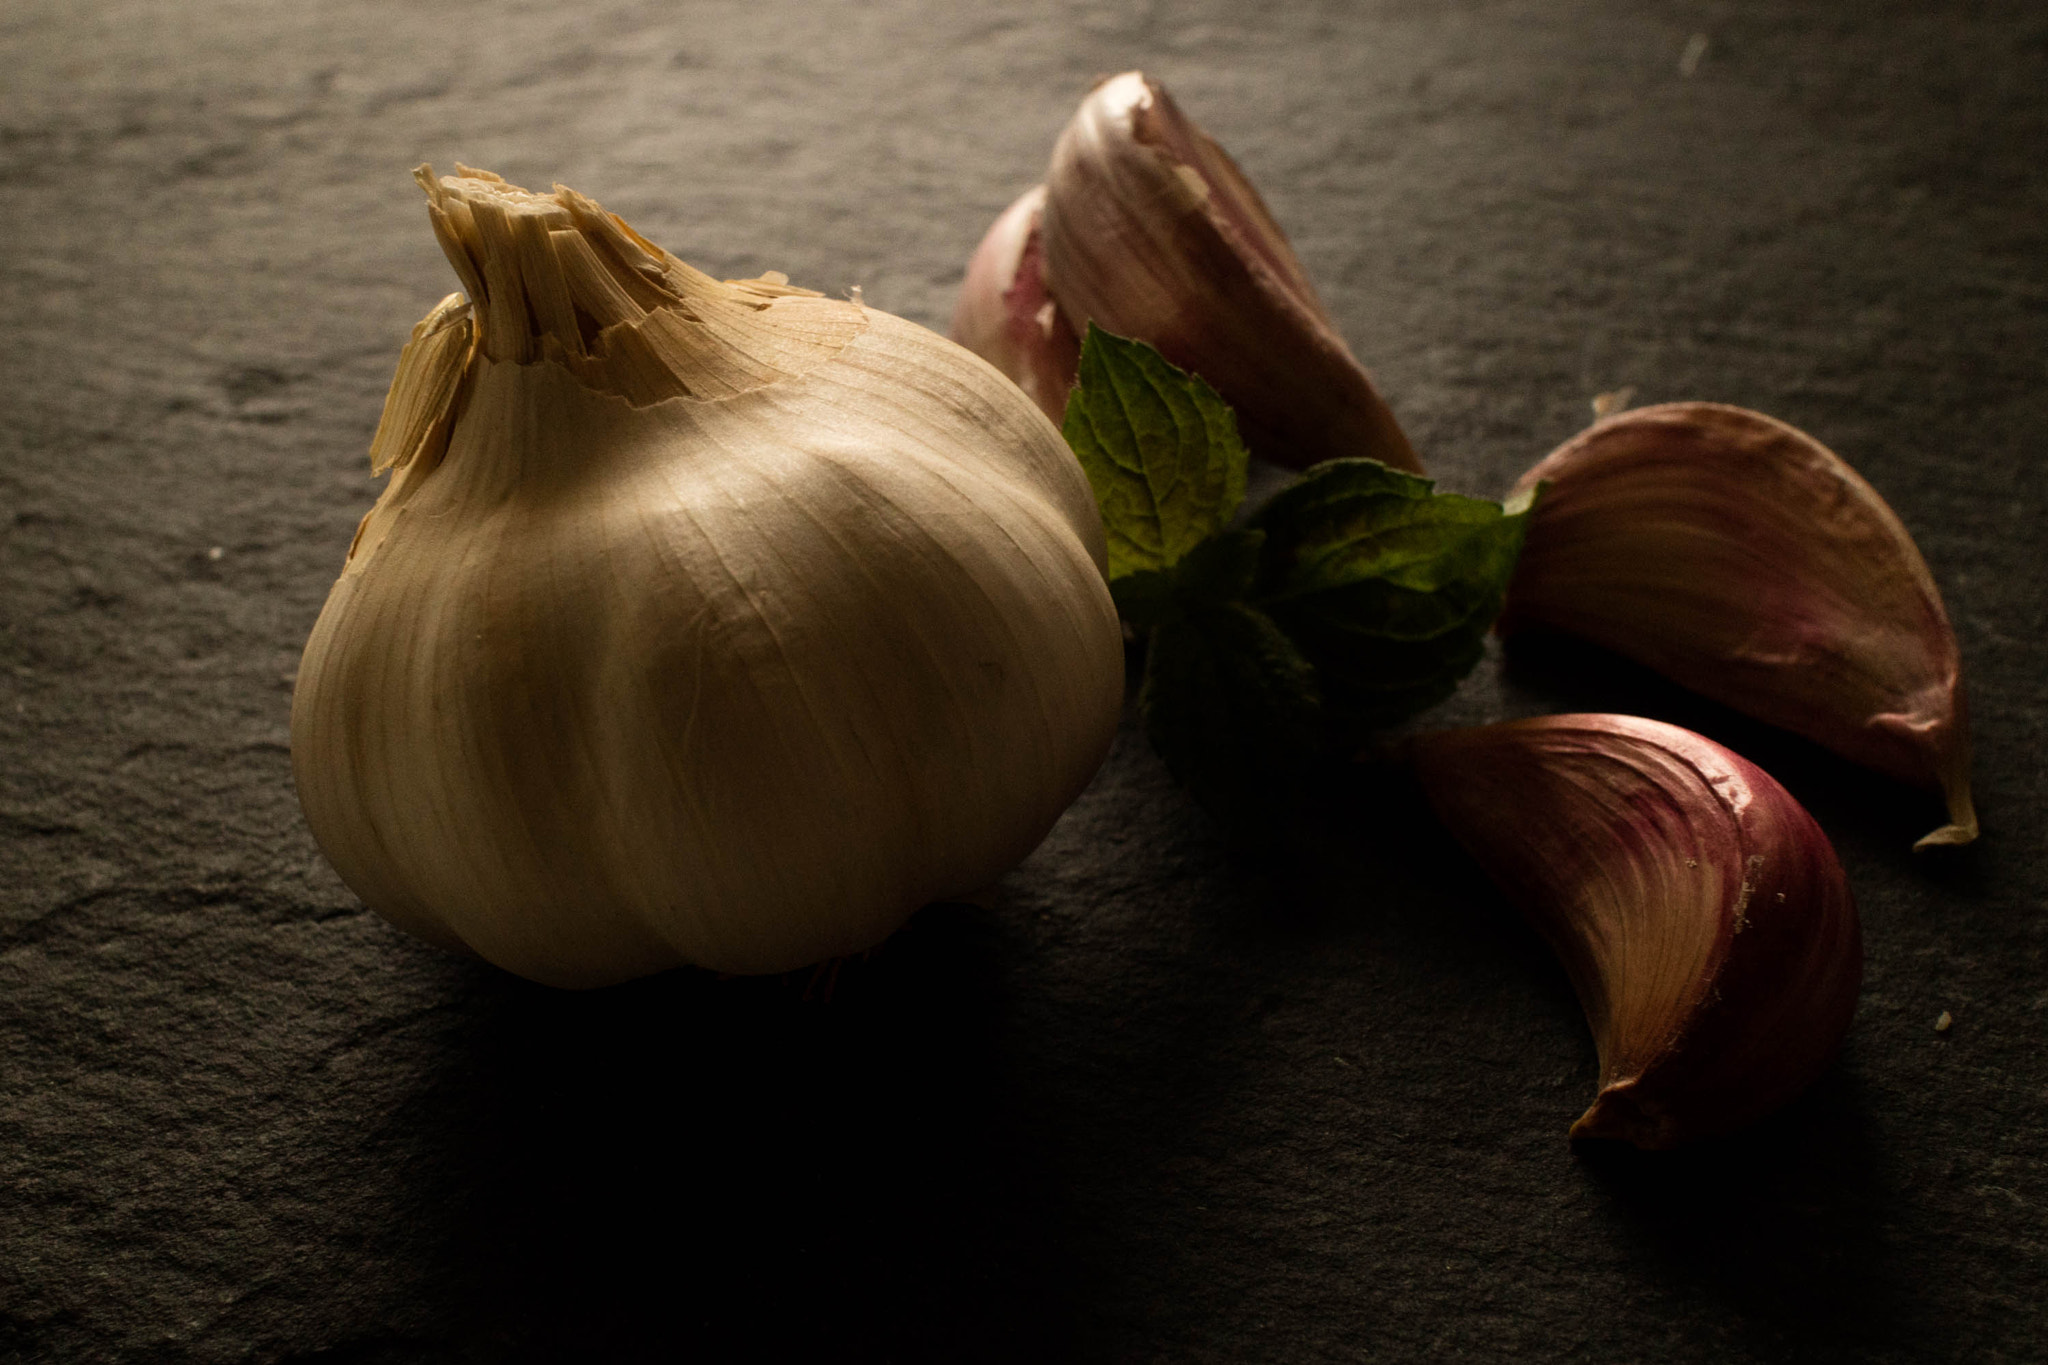 Canon EOS M3 sample photo. Garlic photography